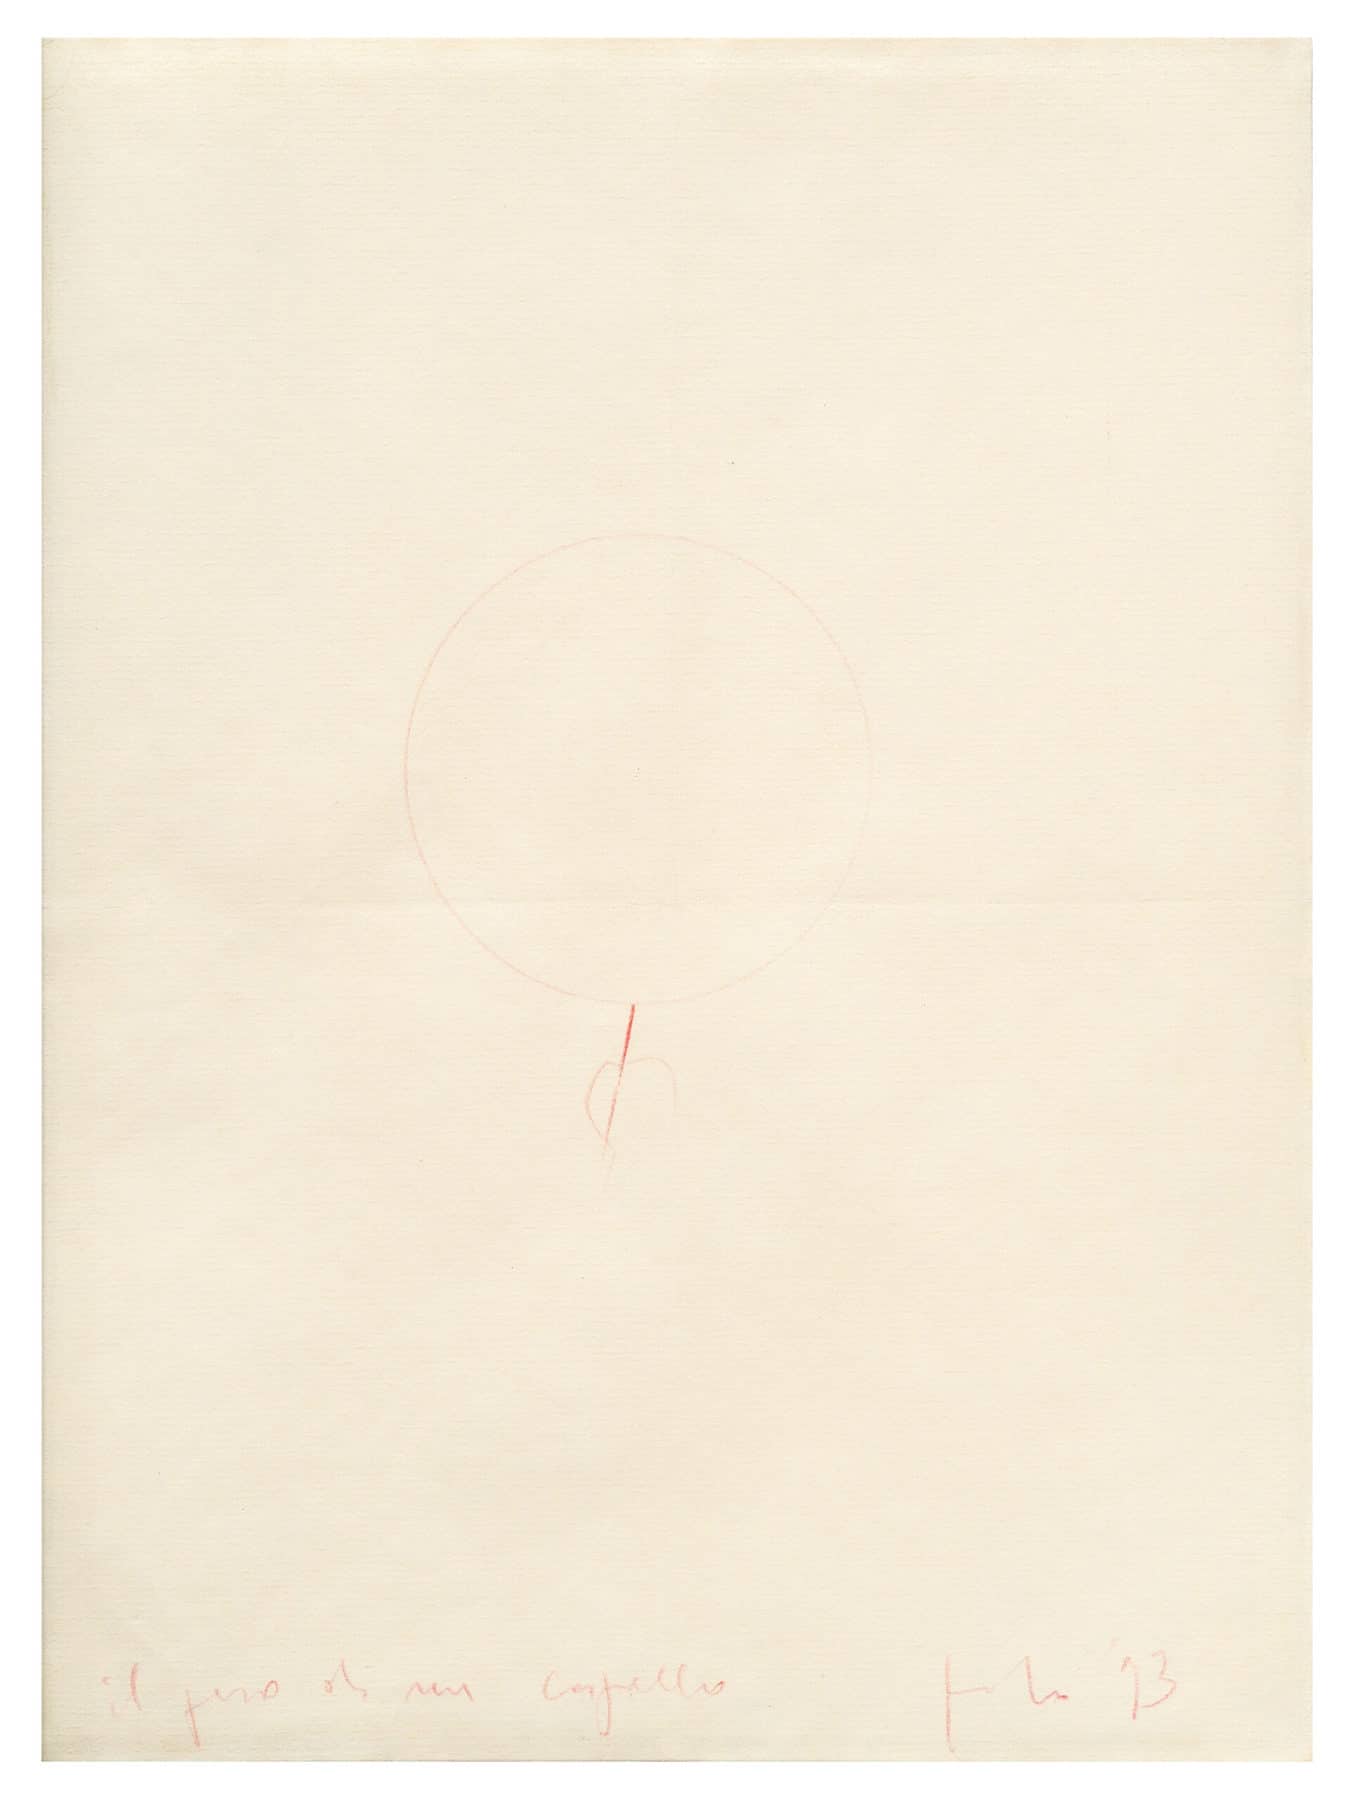 Luciano Fabro | Il peso di un capello, 1993 | pencil on paper | cm. 31.9 x 23.9 | Courtesy Collezione Ramo, Milano